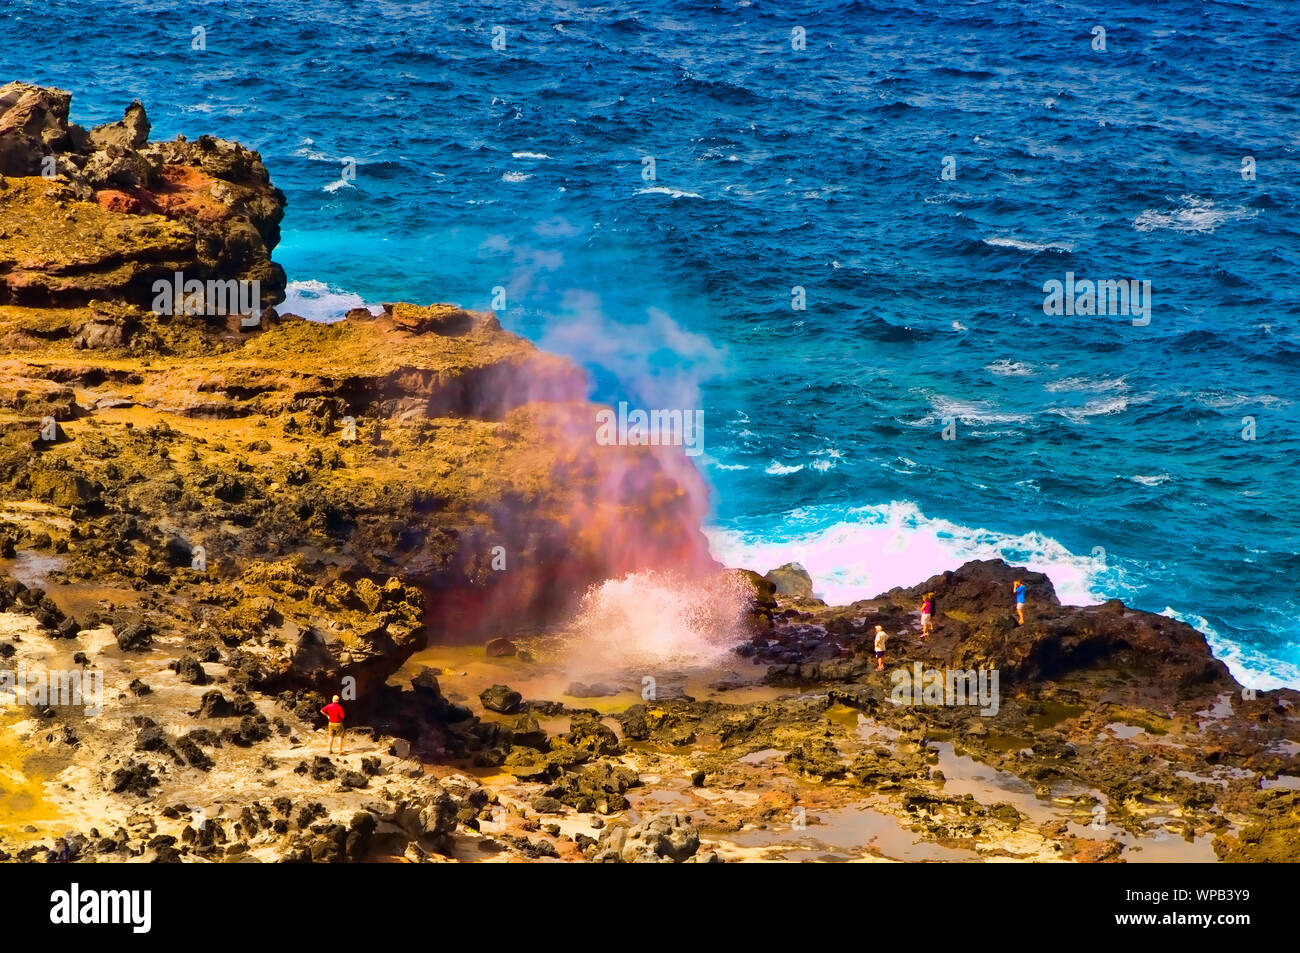 Tourists looking at a blow hole on the Maui coastline, Hawaii, USA Stock Photo